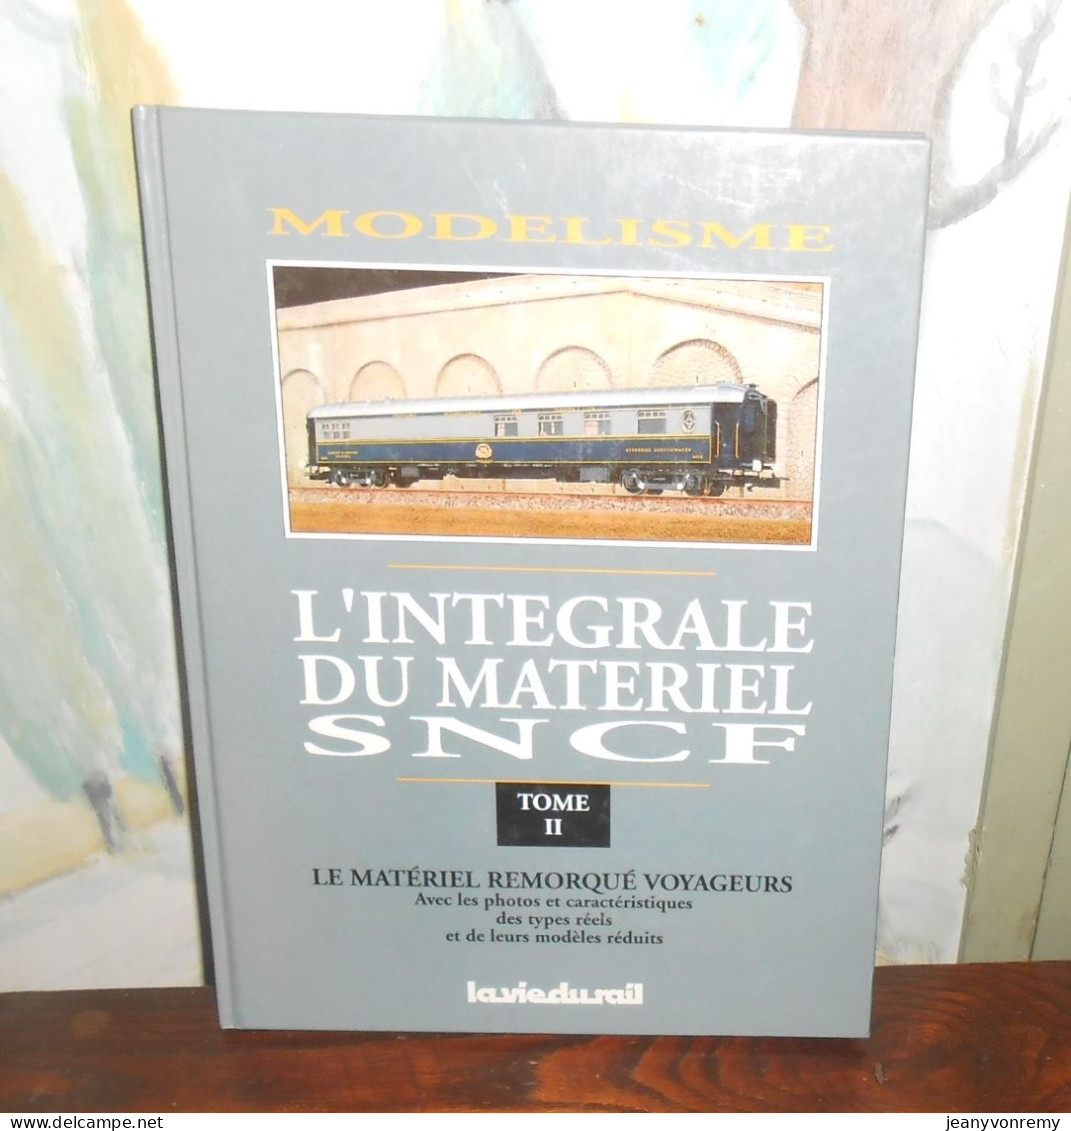 Modélisme. L'intégrale Du Matériel SNCF. Le Matériel Remorqué Voyageurs. La Vie Du Rail. - Model Making